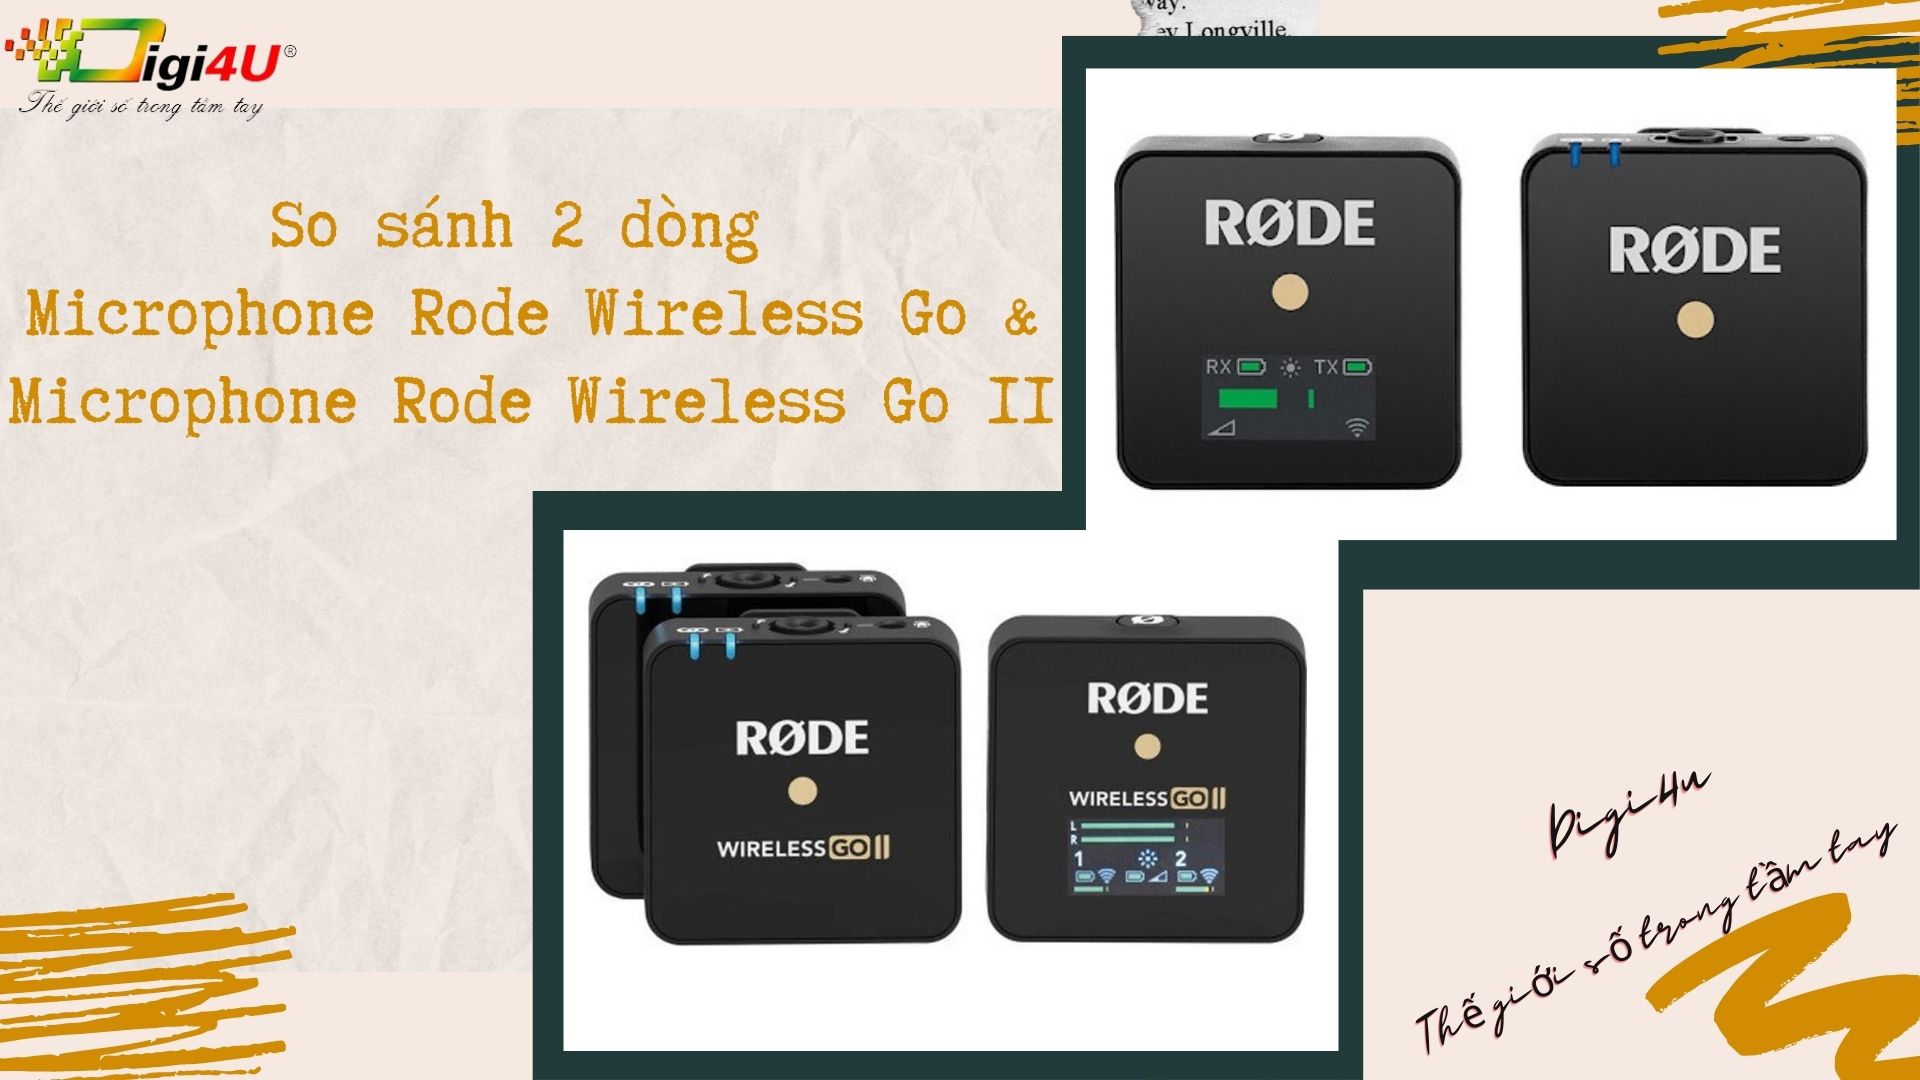 So sánh 2 dòng Microphone Rode Wireless Go và Microphone Rode Wireless Go II